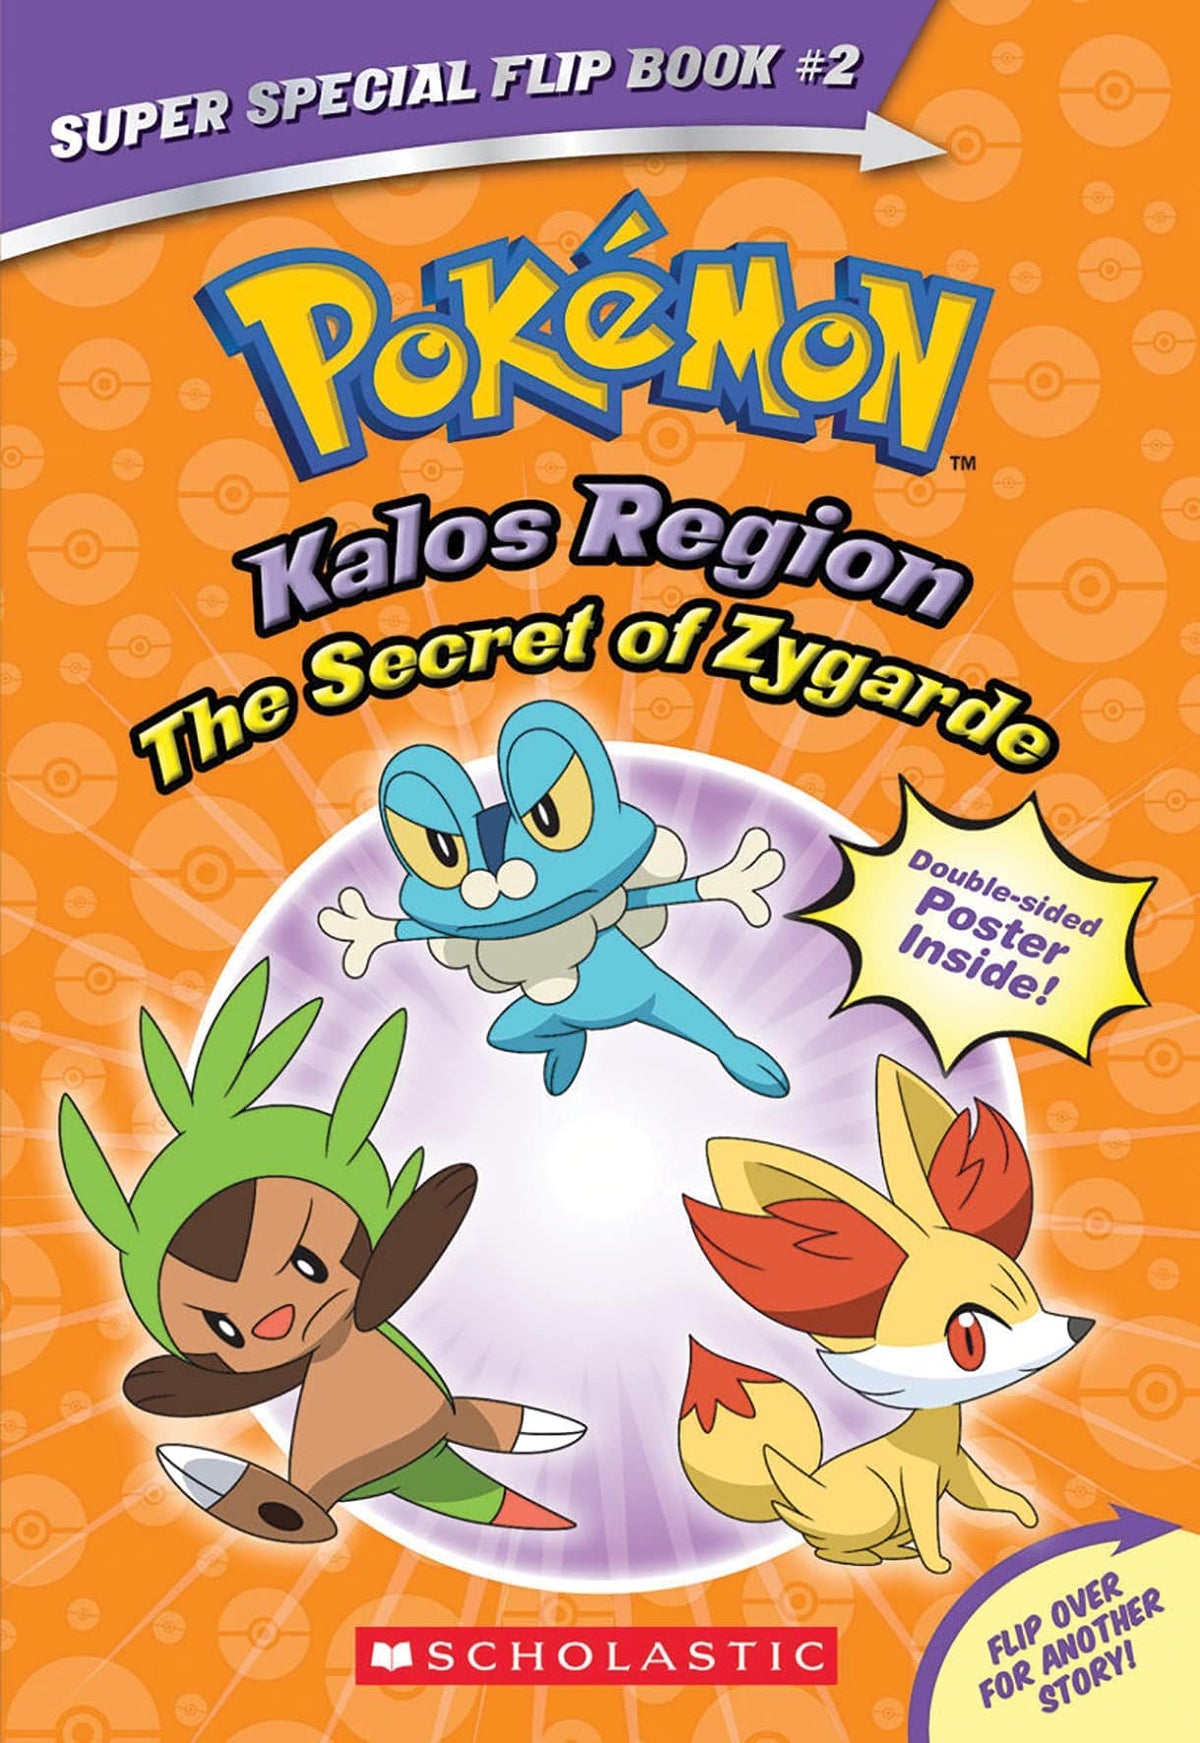 Pokemon: Kalos Region - Secret of Zygarde - Third Eye